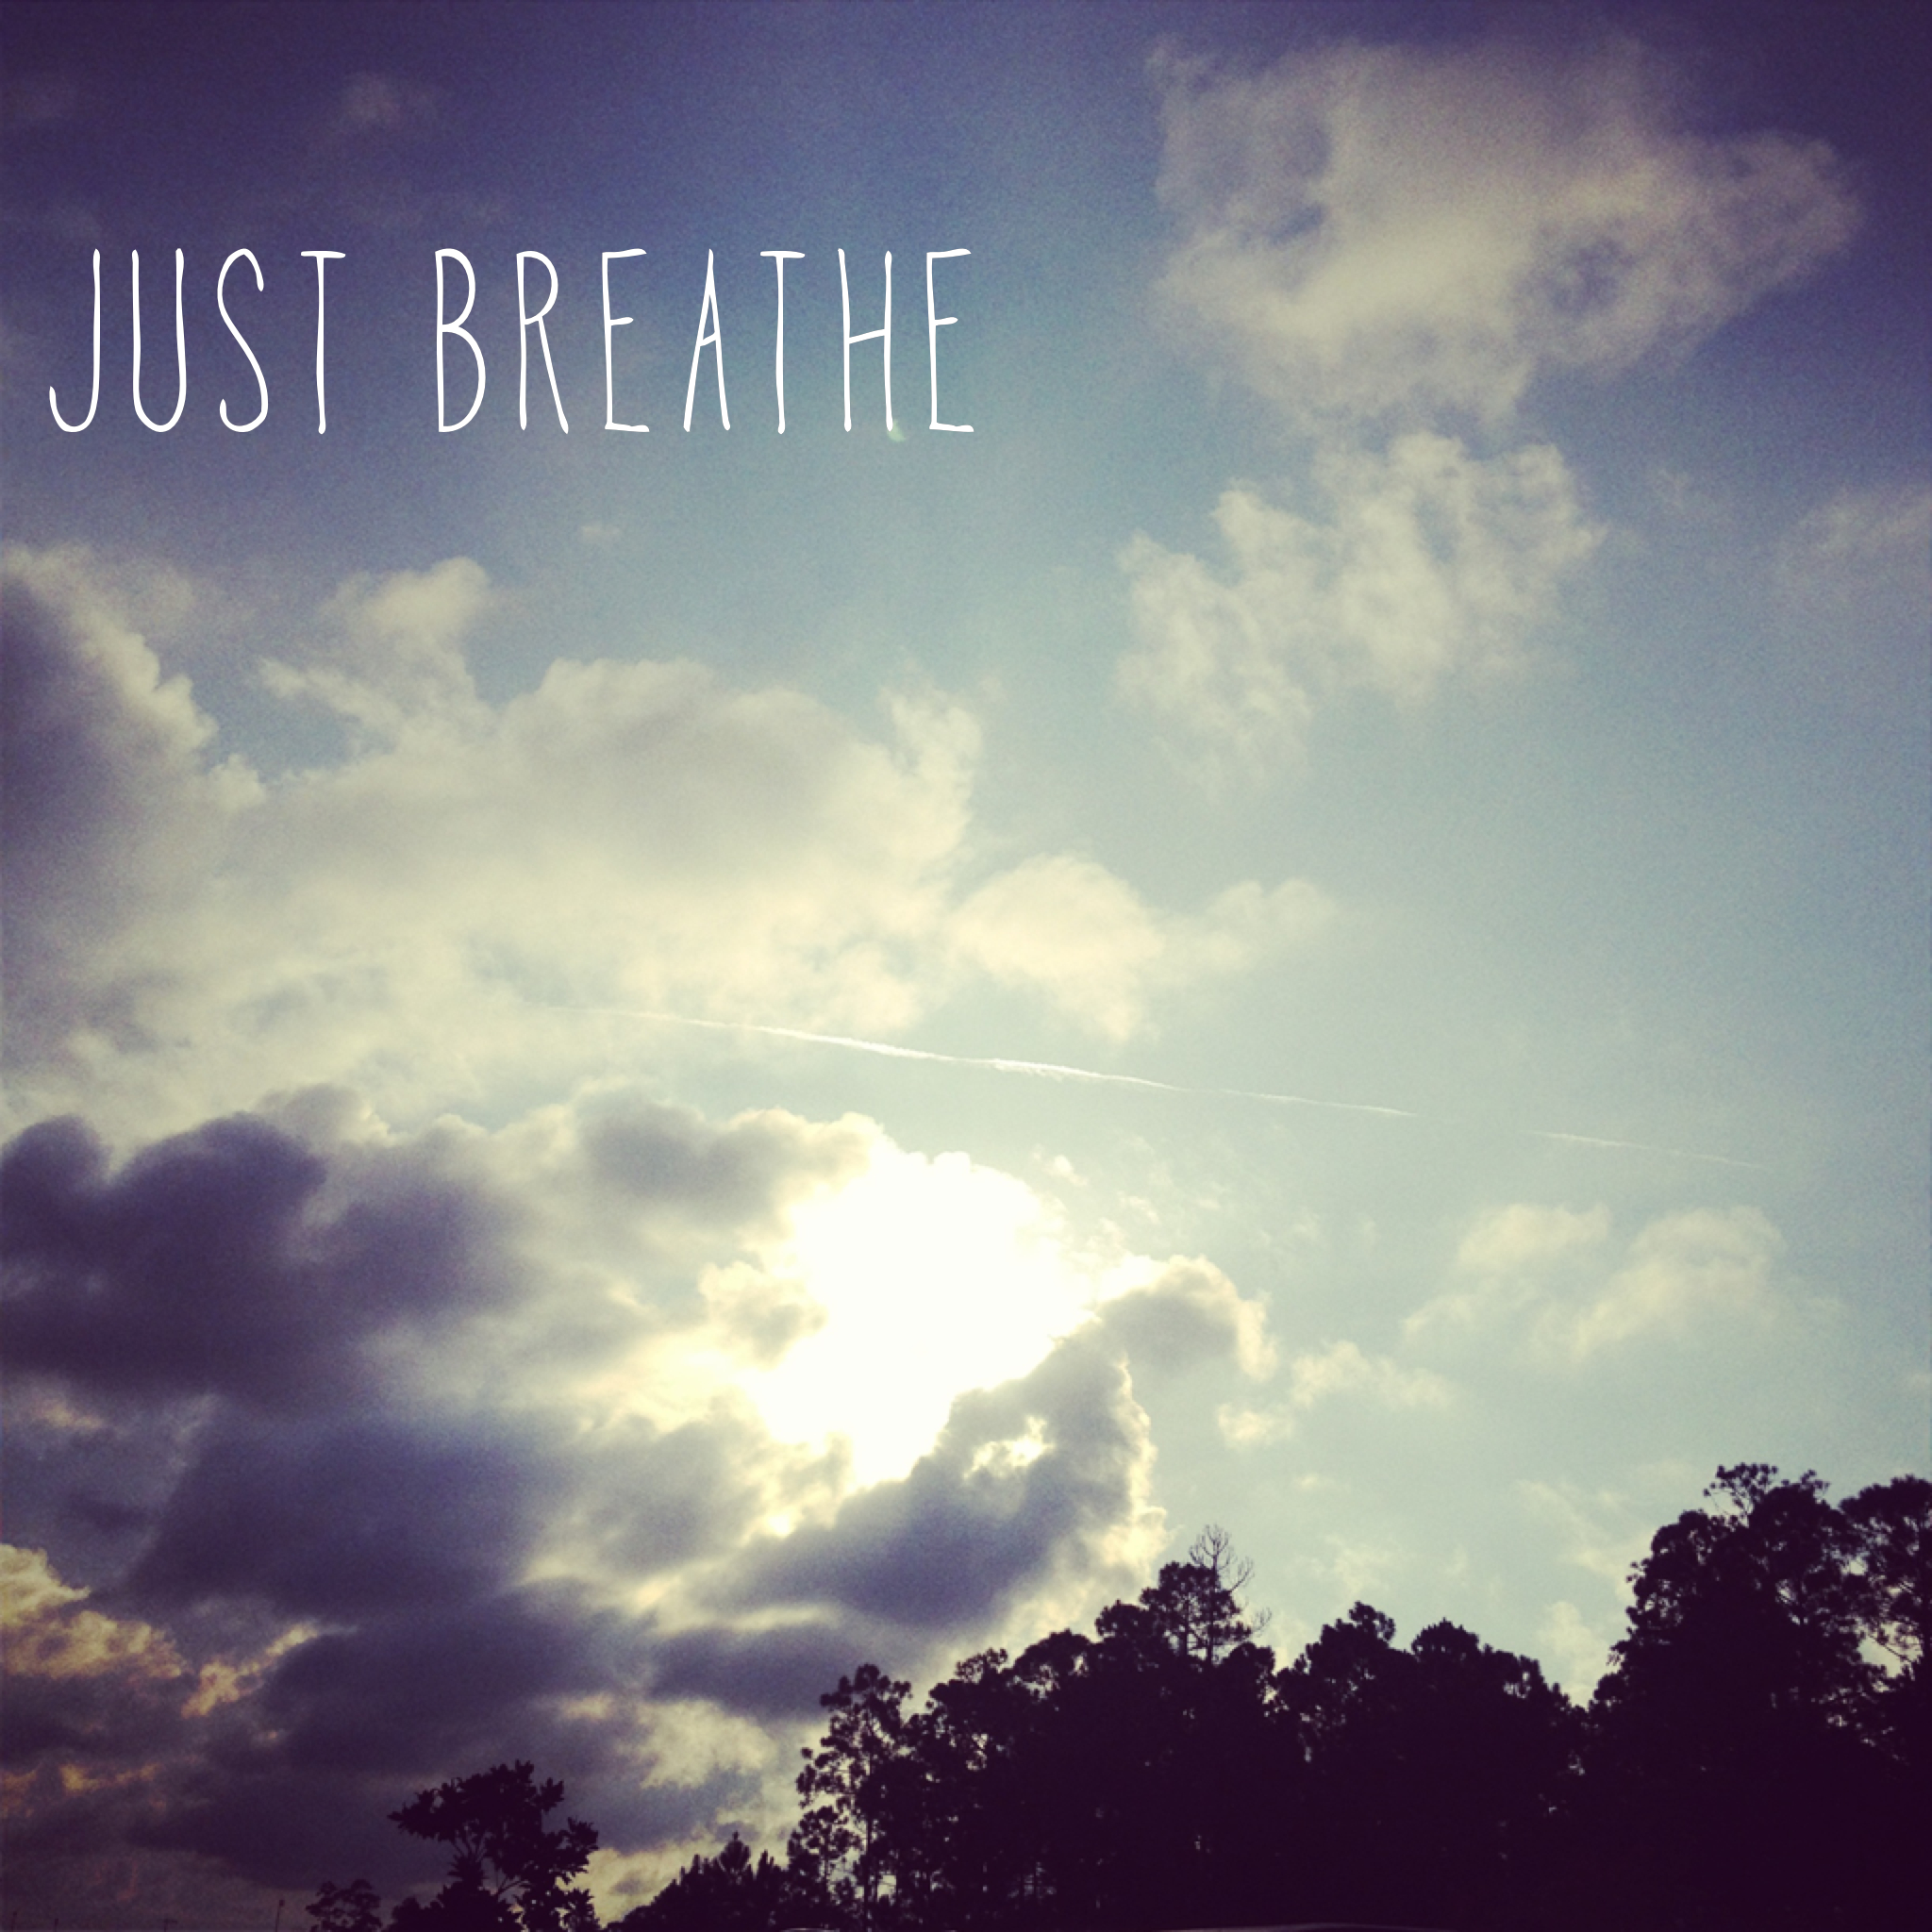 just breathe wallpaper,sky,cloud,natural landscape,daytime,atmosphere